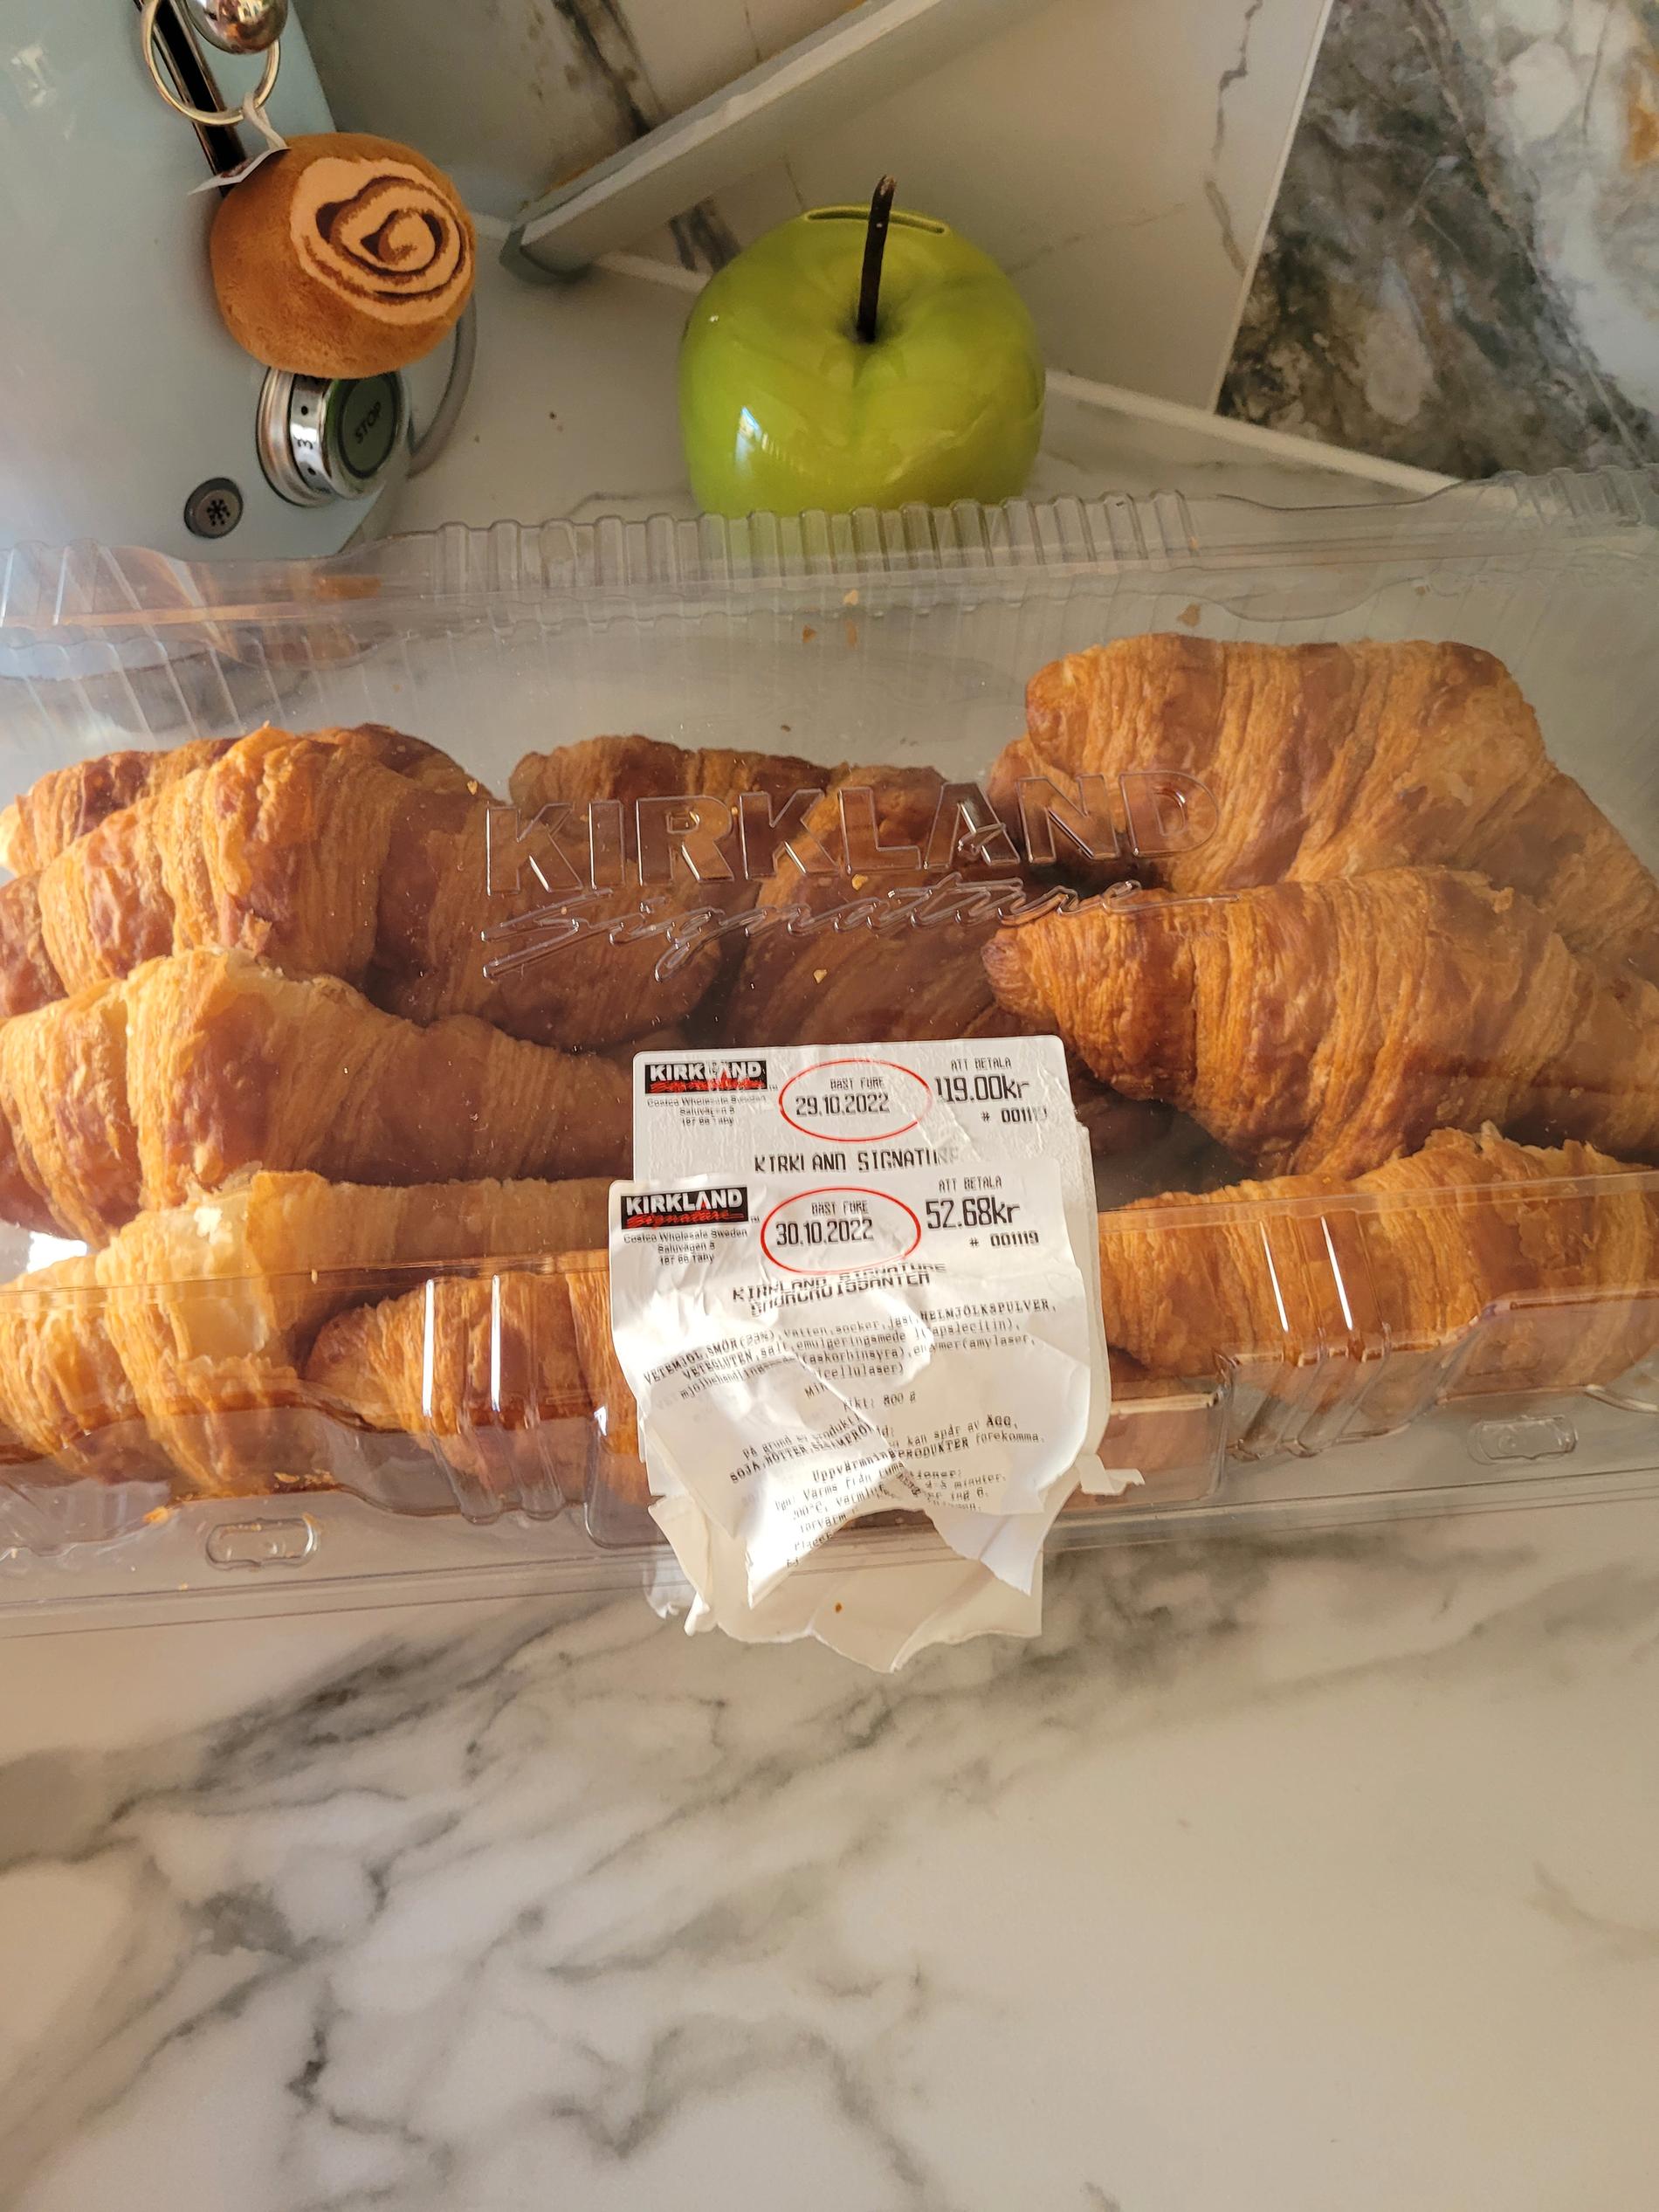 Douglas köpte ett paket croissanter som var ”näst intill oätliga”.